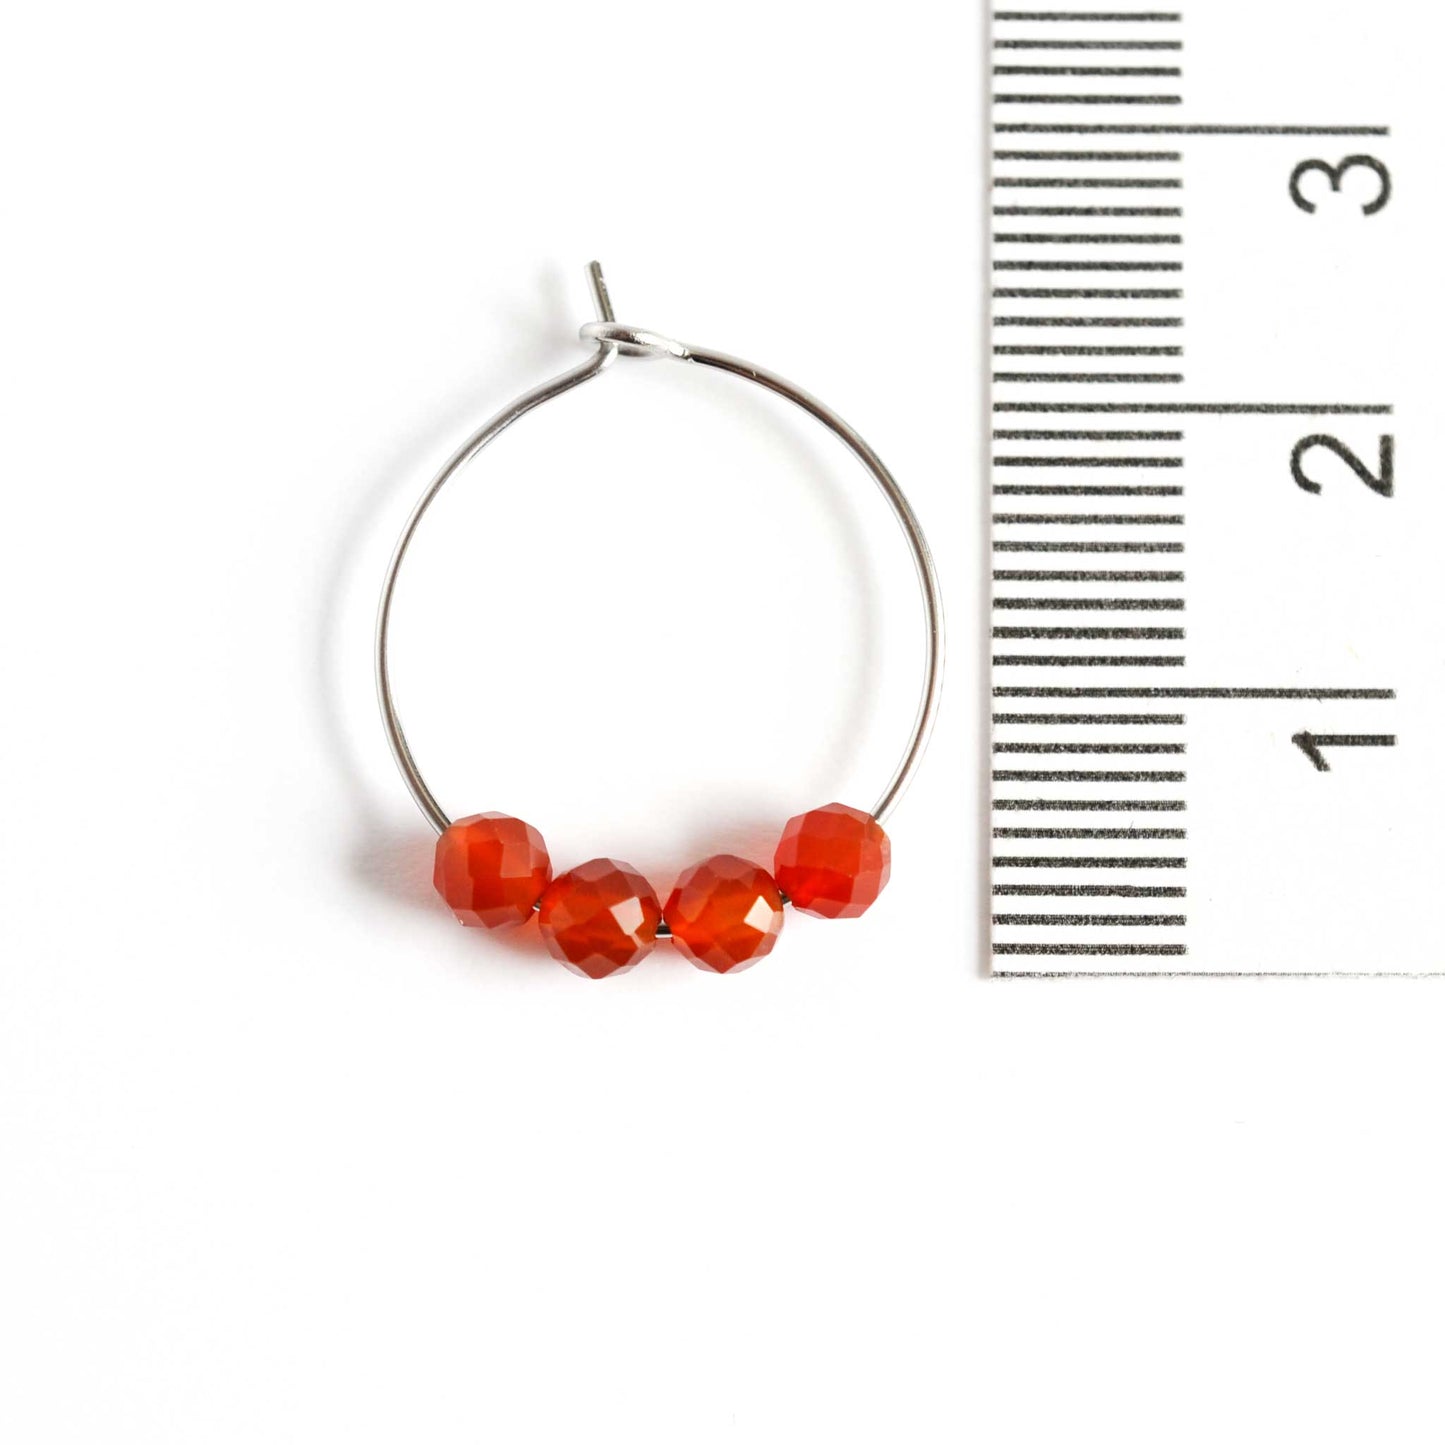 2cm diameter Carnelian gemstone hoop earring next to ruler